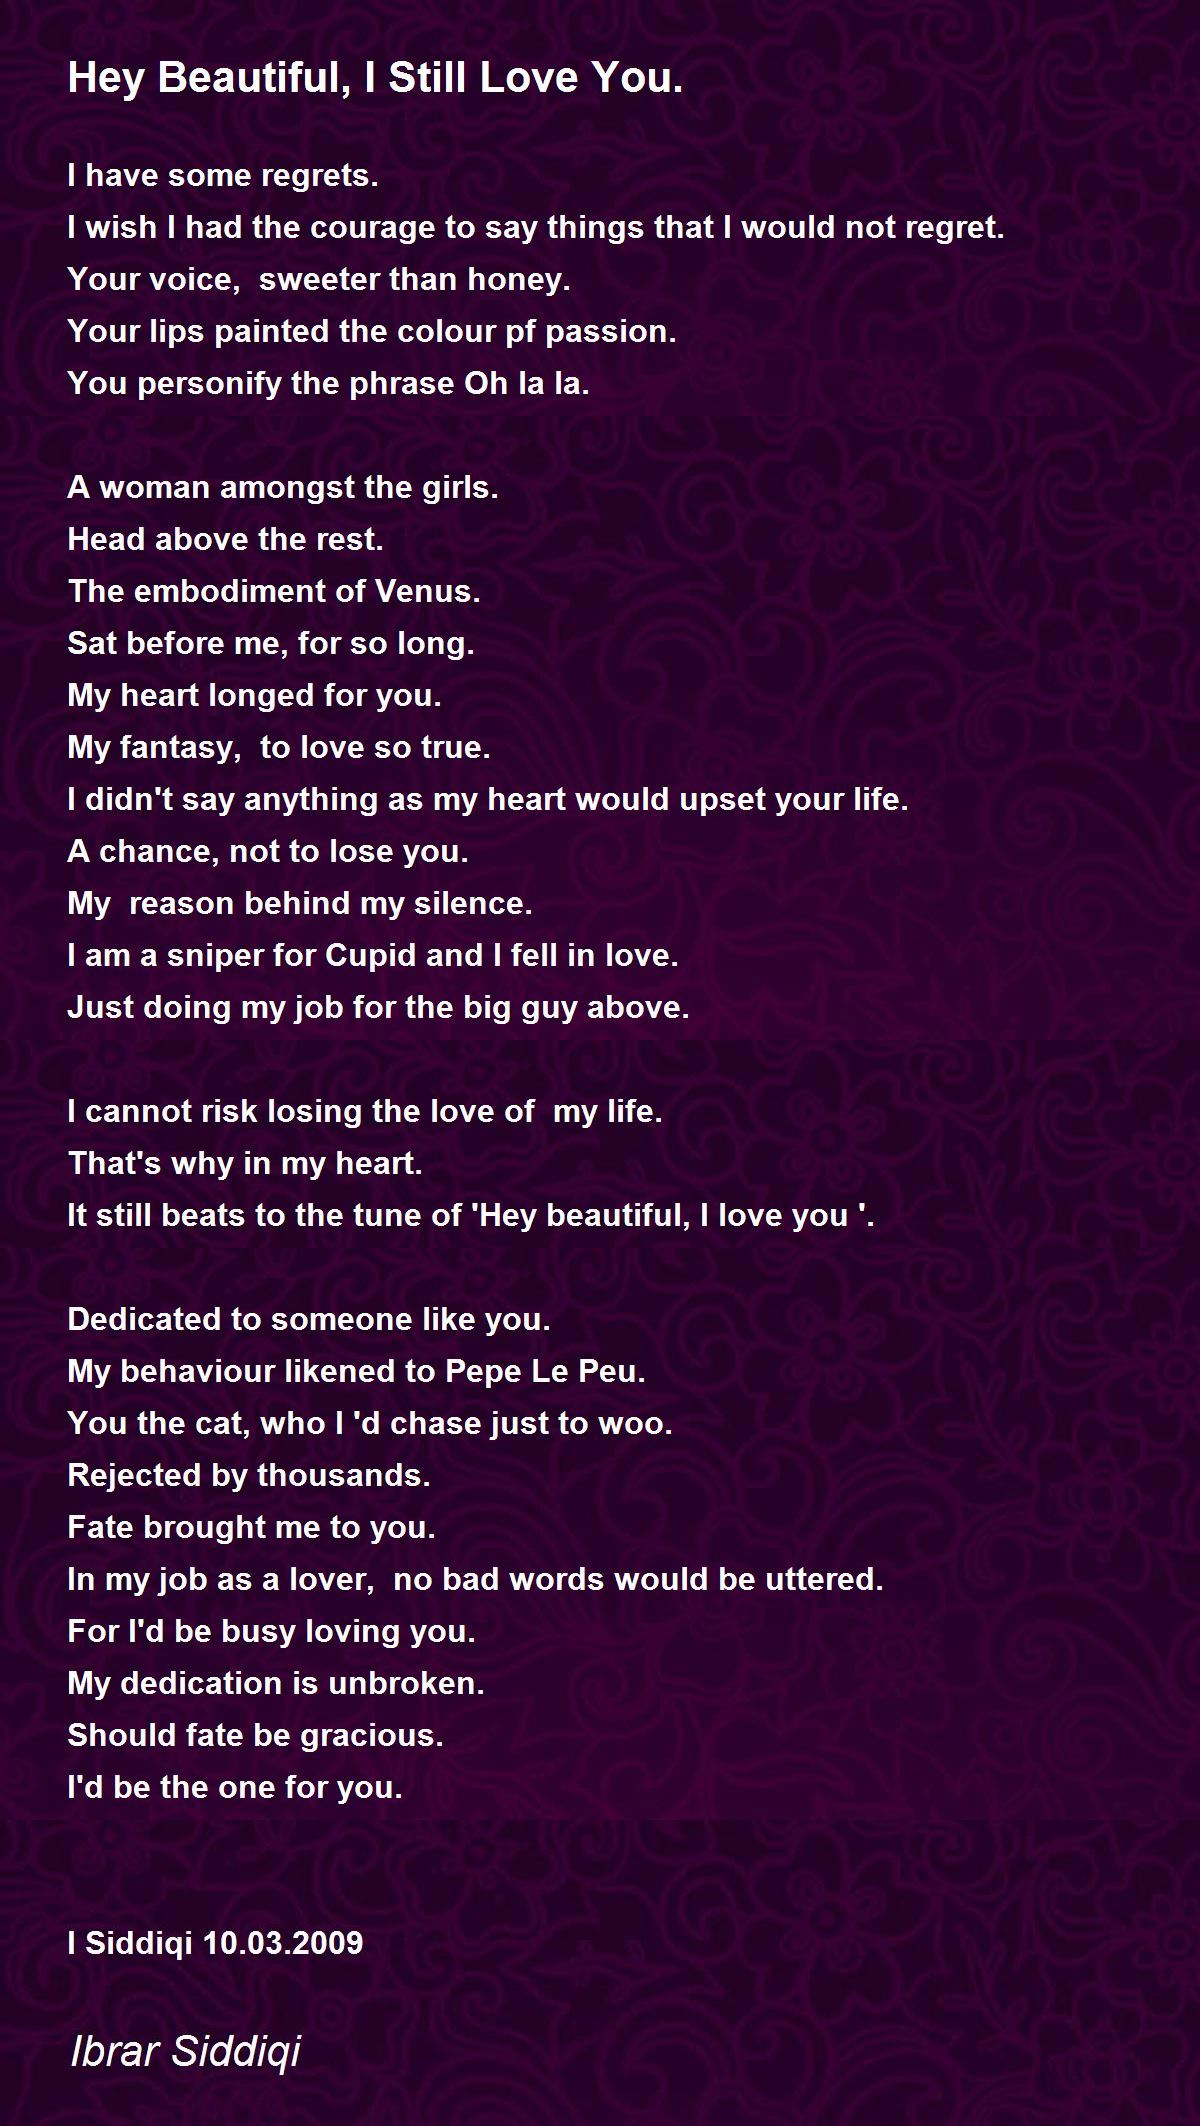 Hey Beautiful, I Still Love You. - Hey Beautiful, I Still Love You. Poem by  Ibrar Siddiqi